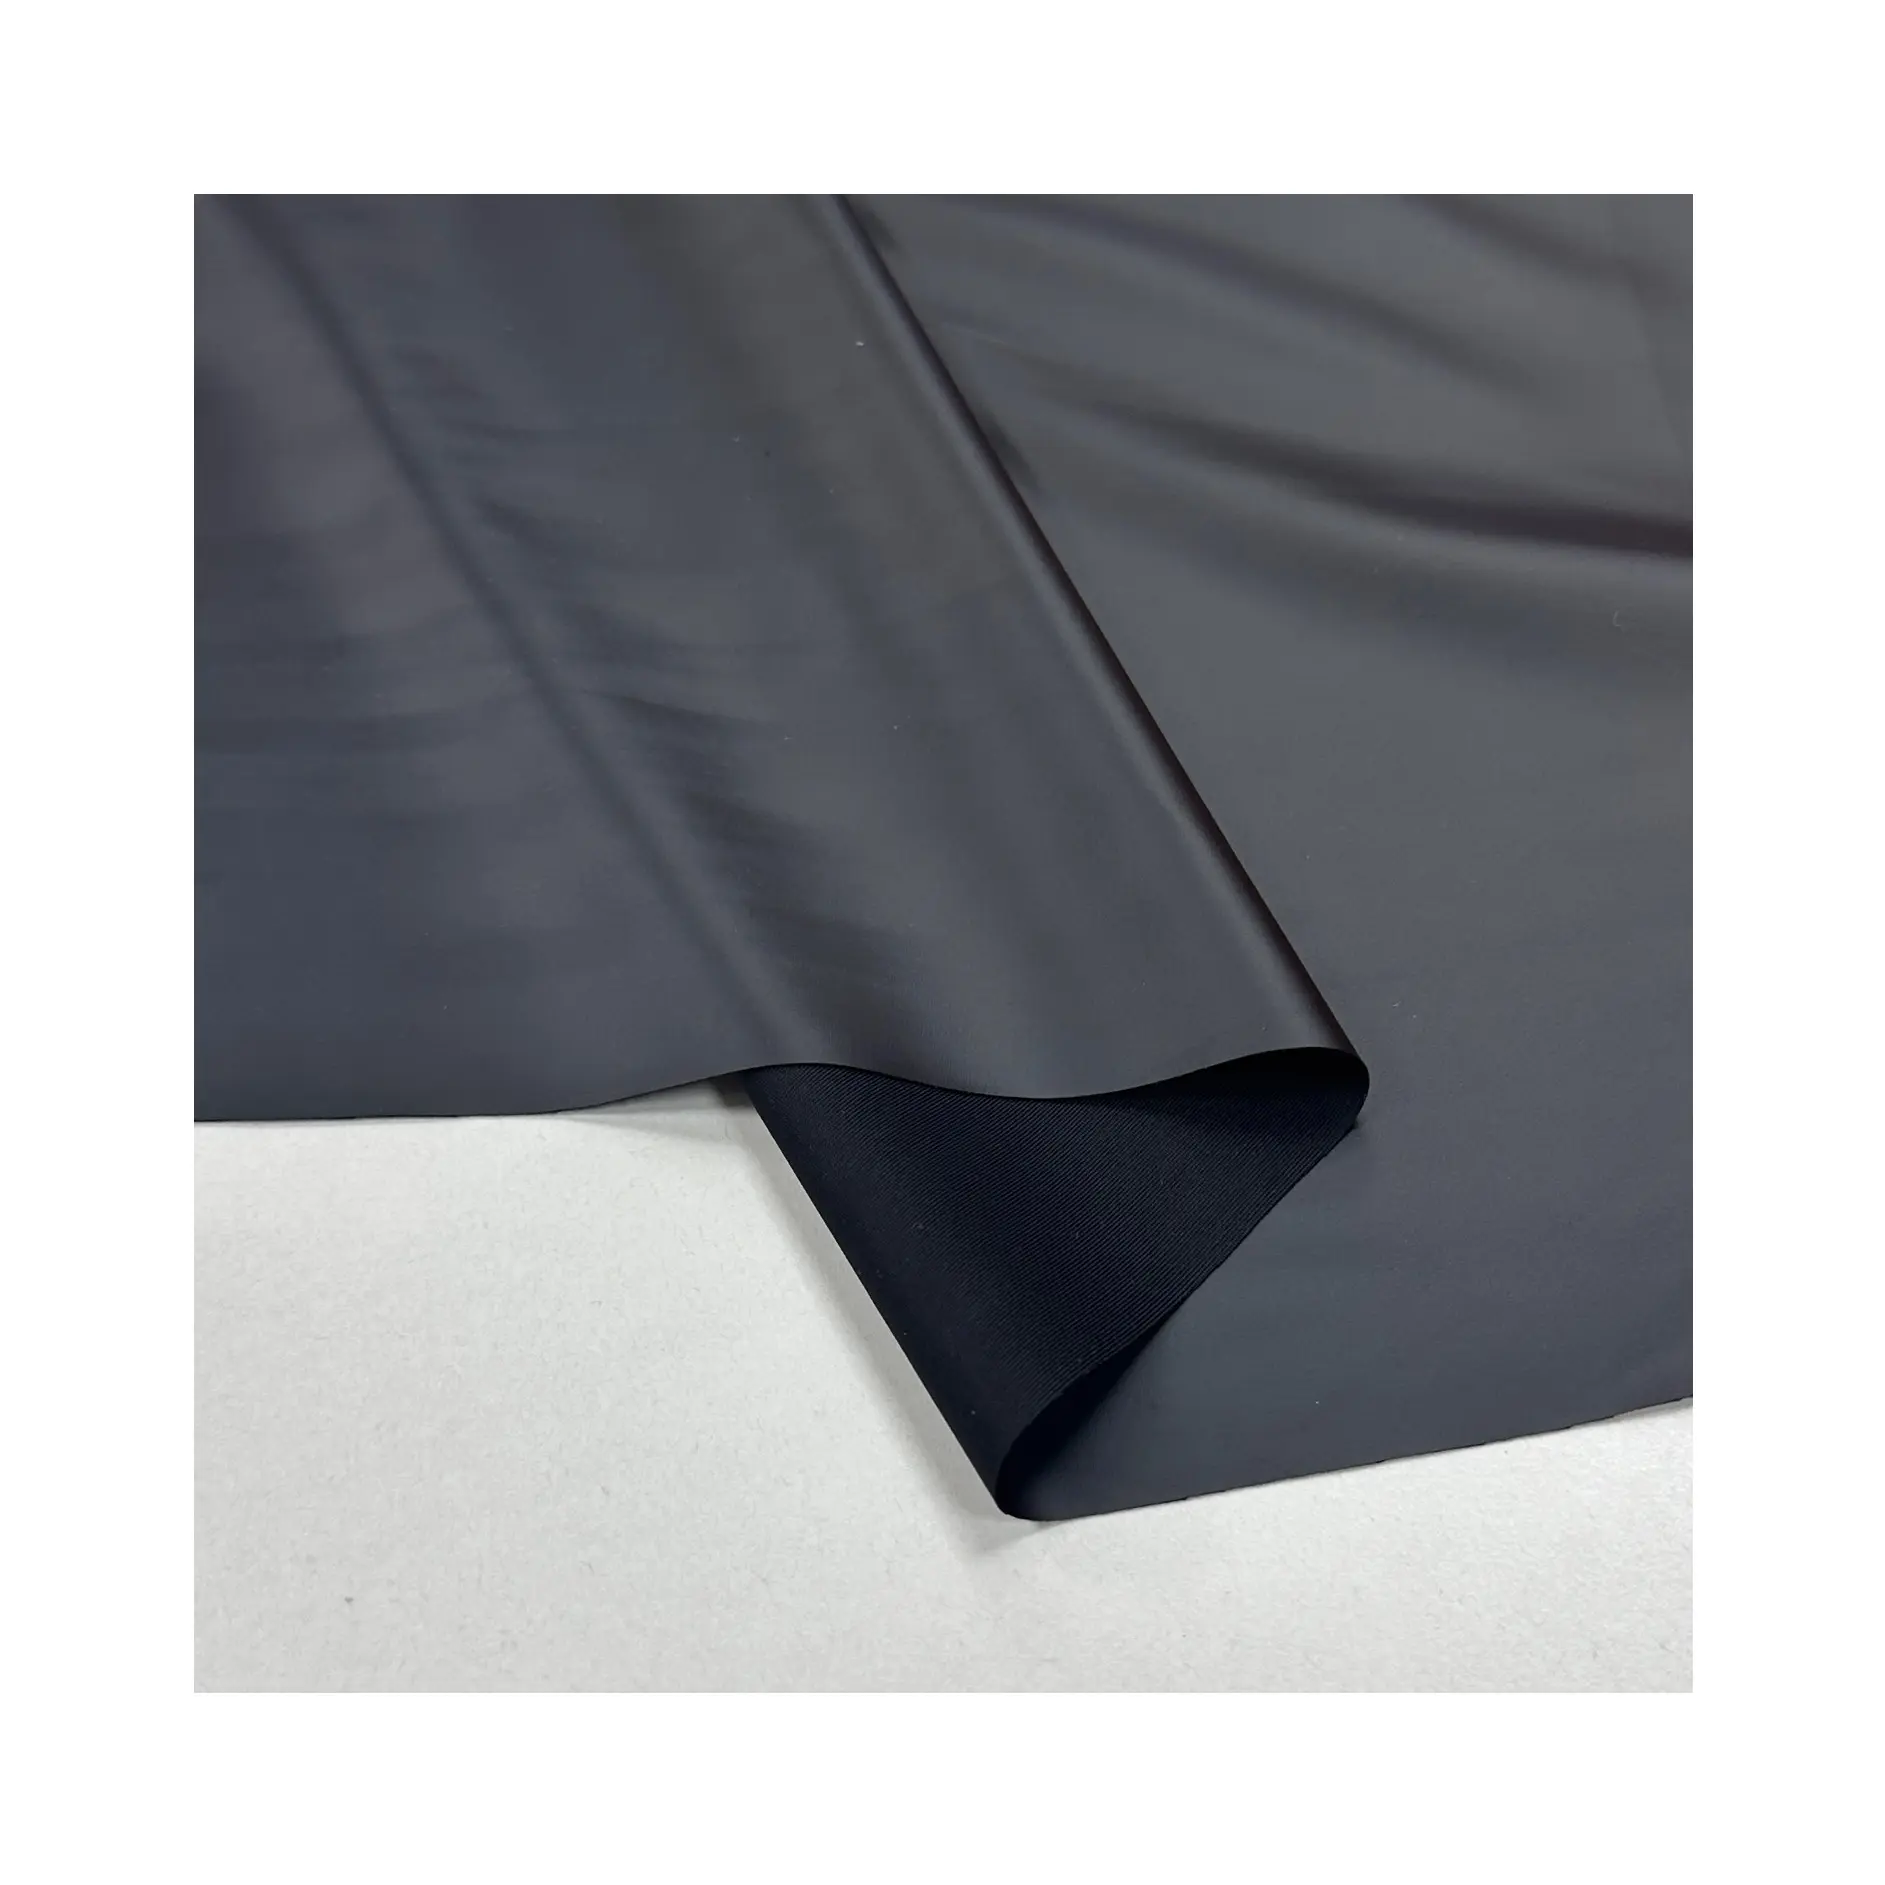 Noir 4-Way Stretch Écologique PU Cuir Synthétique Léger Imperméable Tissu Tricoté pour Collants Leggings Robes Jupes